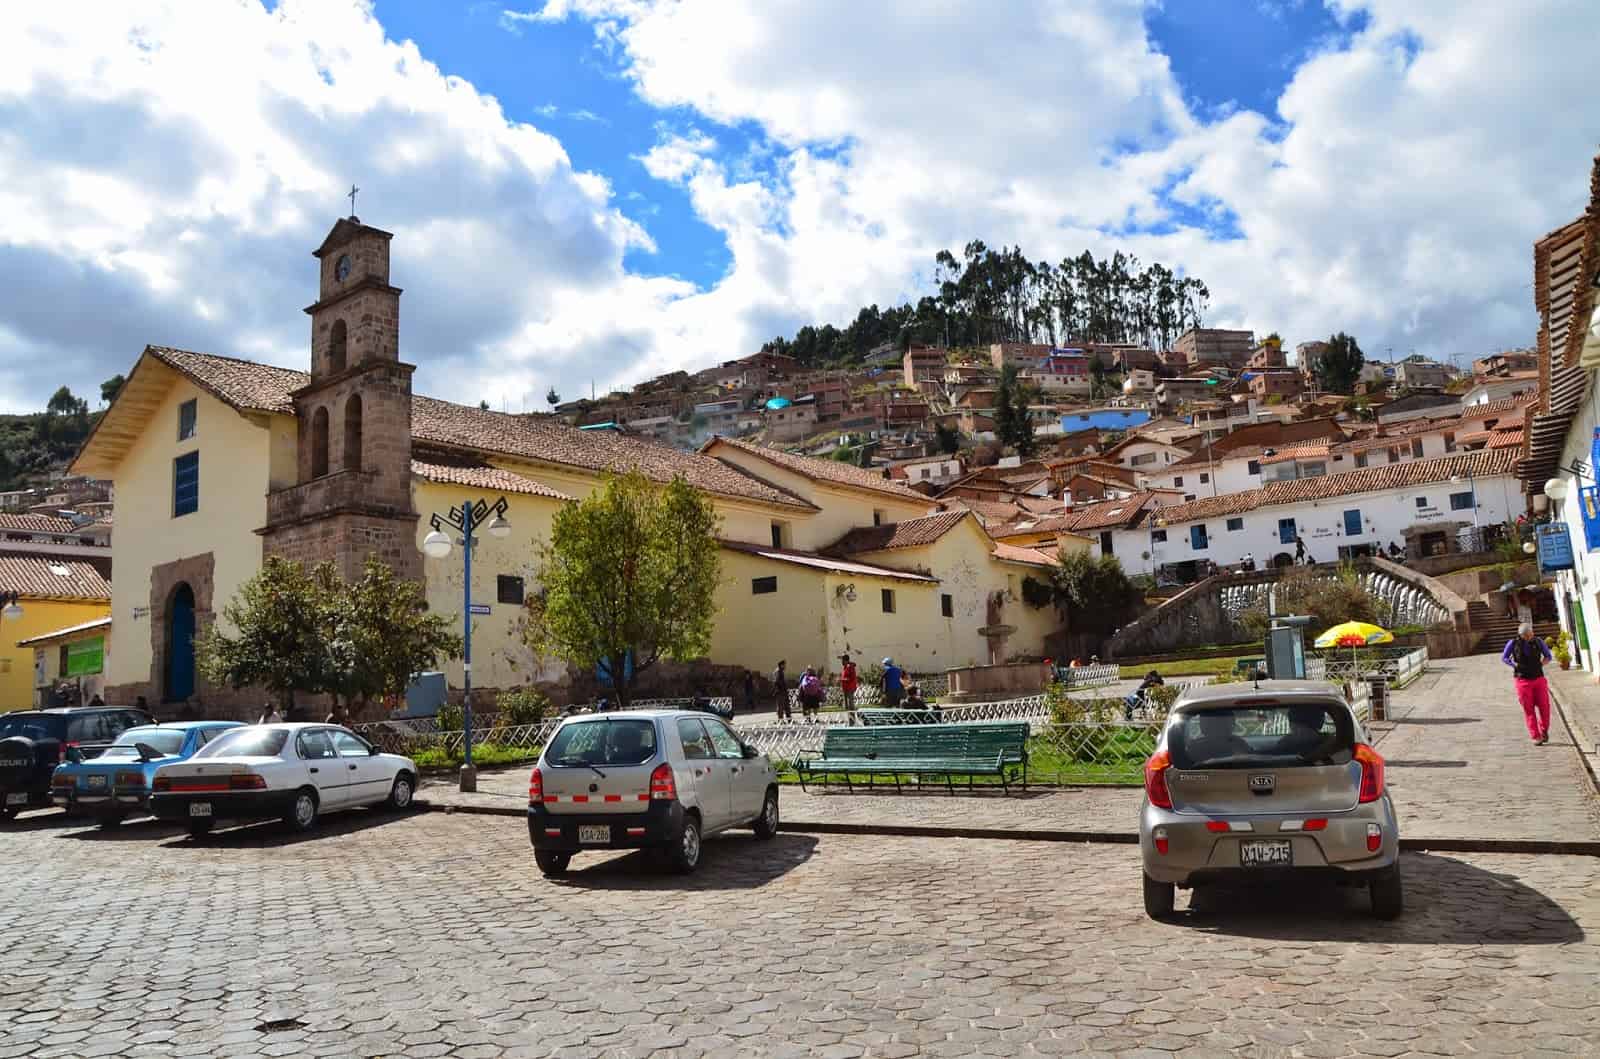 Plaza de San Blas in San Blas, Cusco, Peru